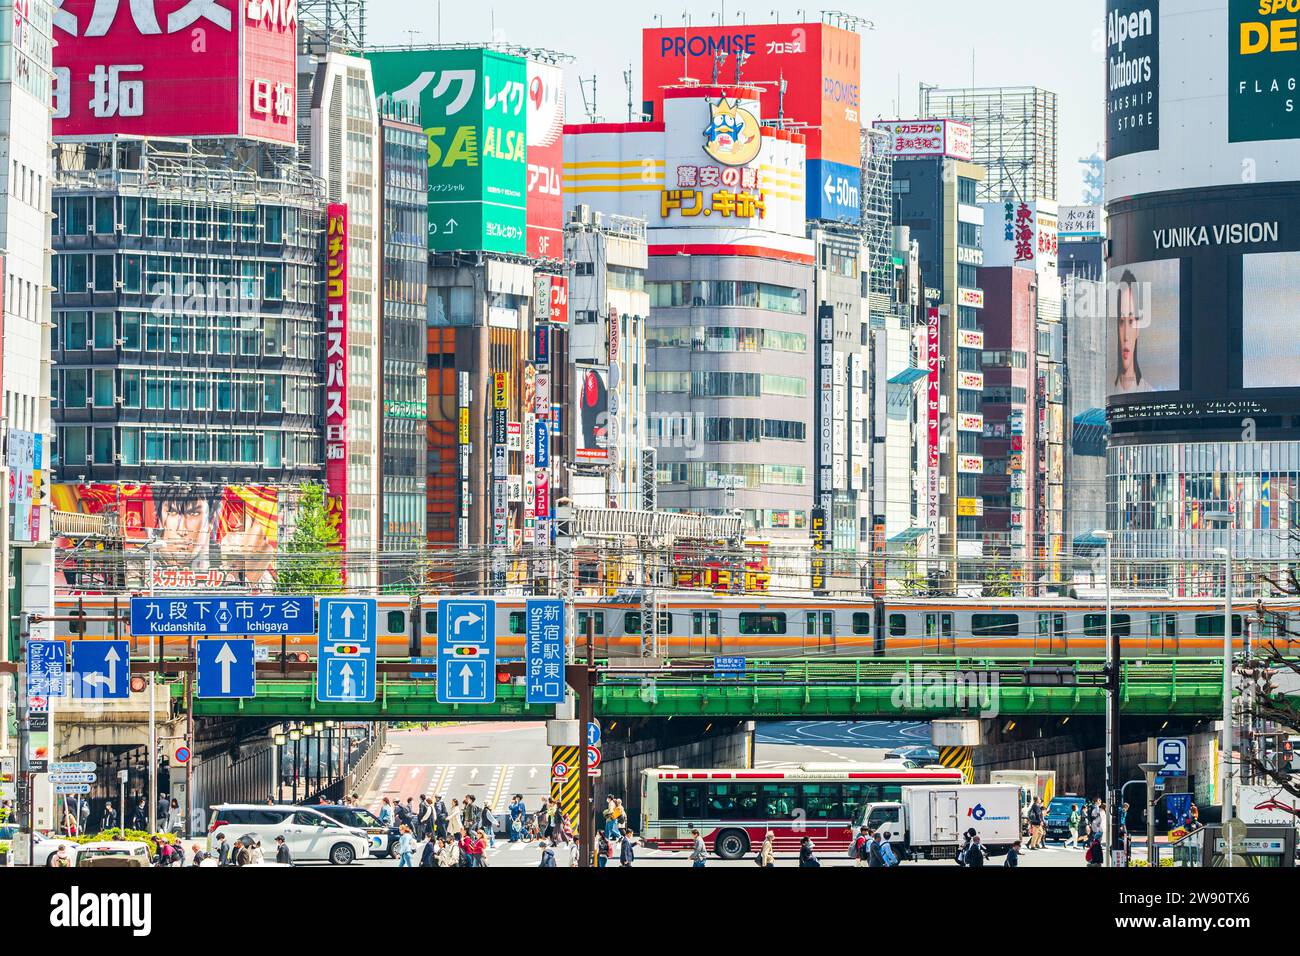 Point de vue célèbre, Tokyo Metropolitan Road, route 4, à Shinjuku, avec vue en perspective comprimée du croisement de rues, du pont ferroviaire et des bâtiments. Banque D'Images